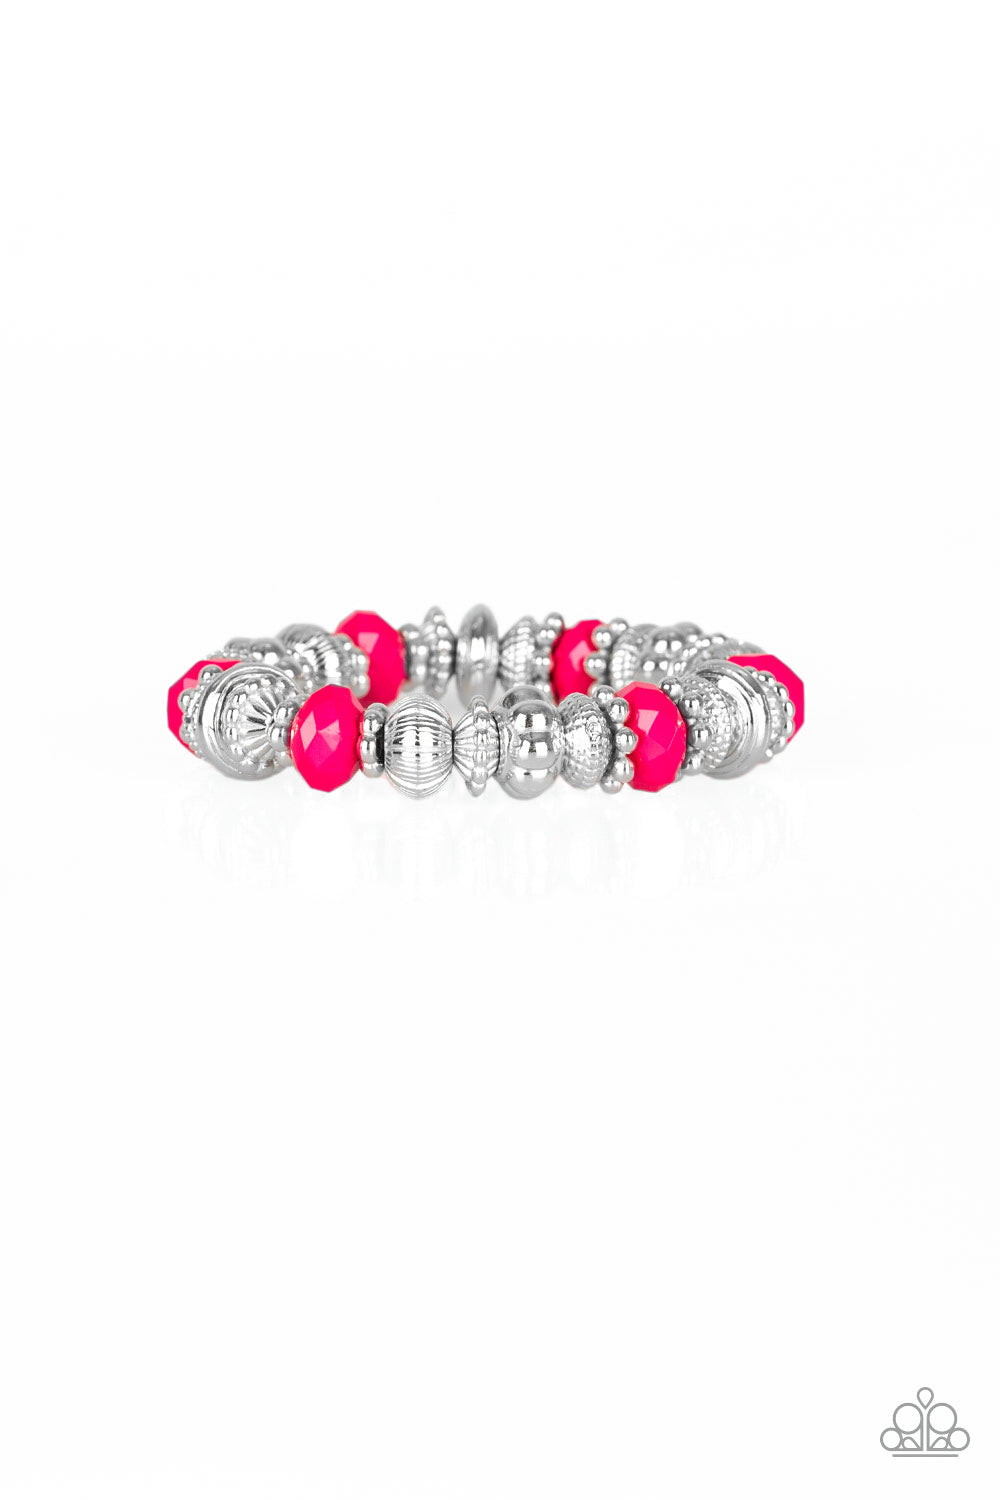 Live Life To The COLOR-fullest - Pink Bracelet